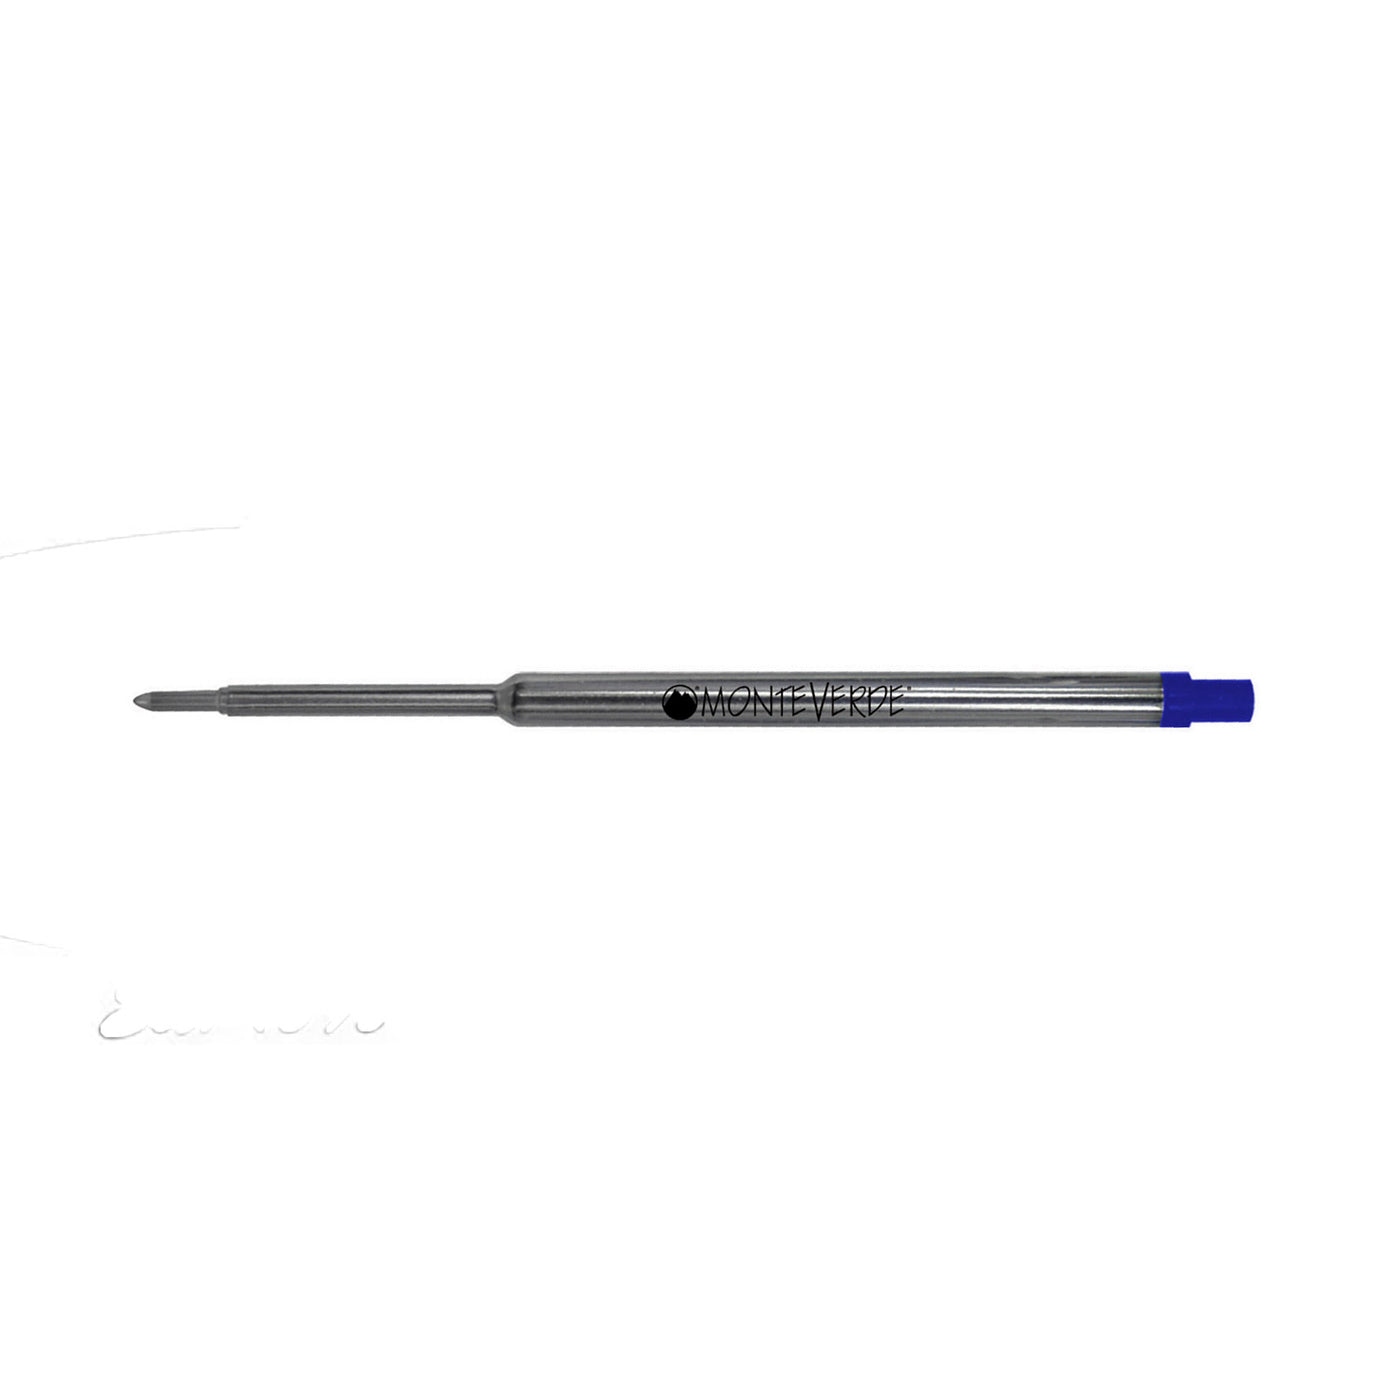 Monteverde Ceramic Gel Ball Pen Refill for Waterman - Fine - Blue - Pack of 2 3